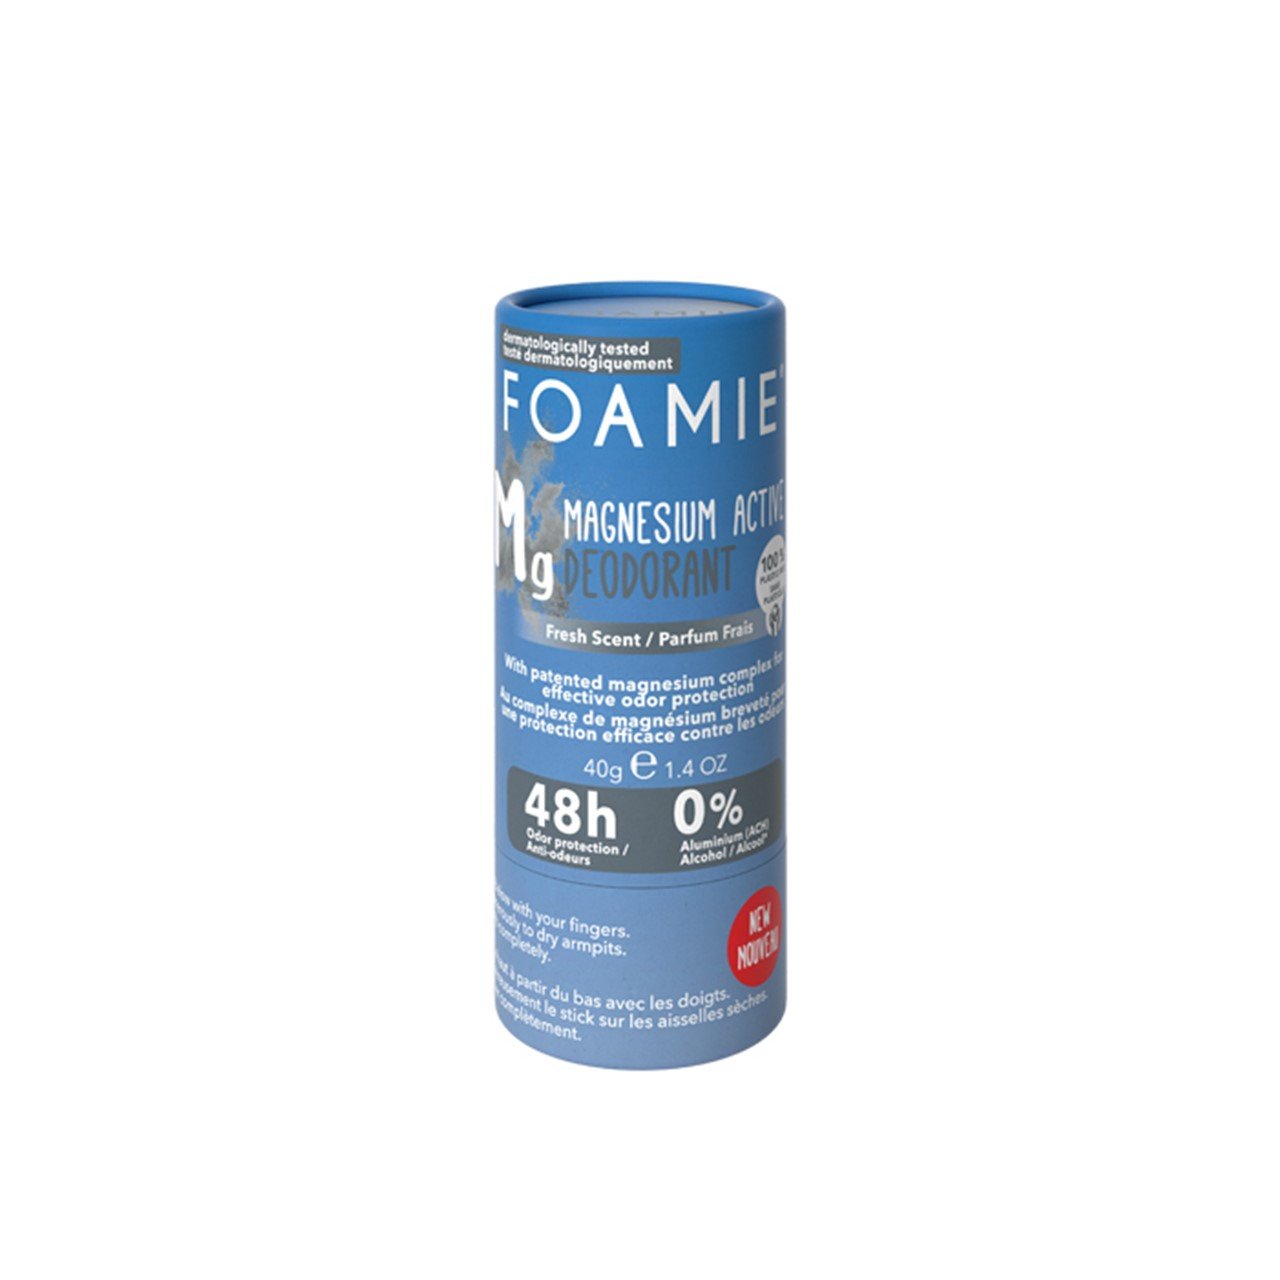 Foamie Refresh Magnesium Active Solid Deodorant 48h 40g (1.4 oz)